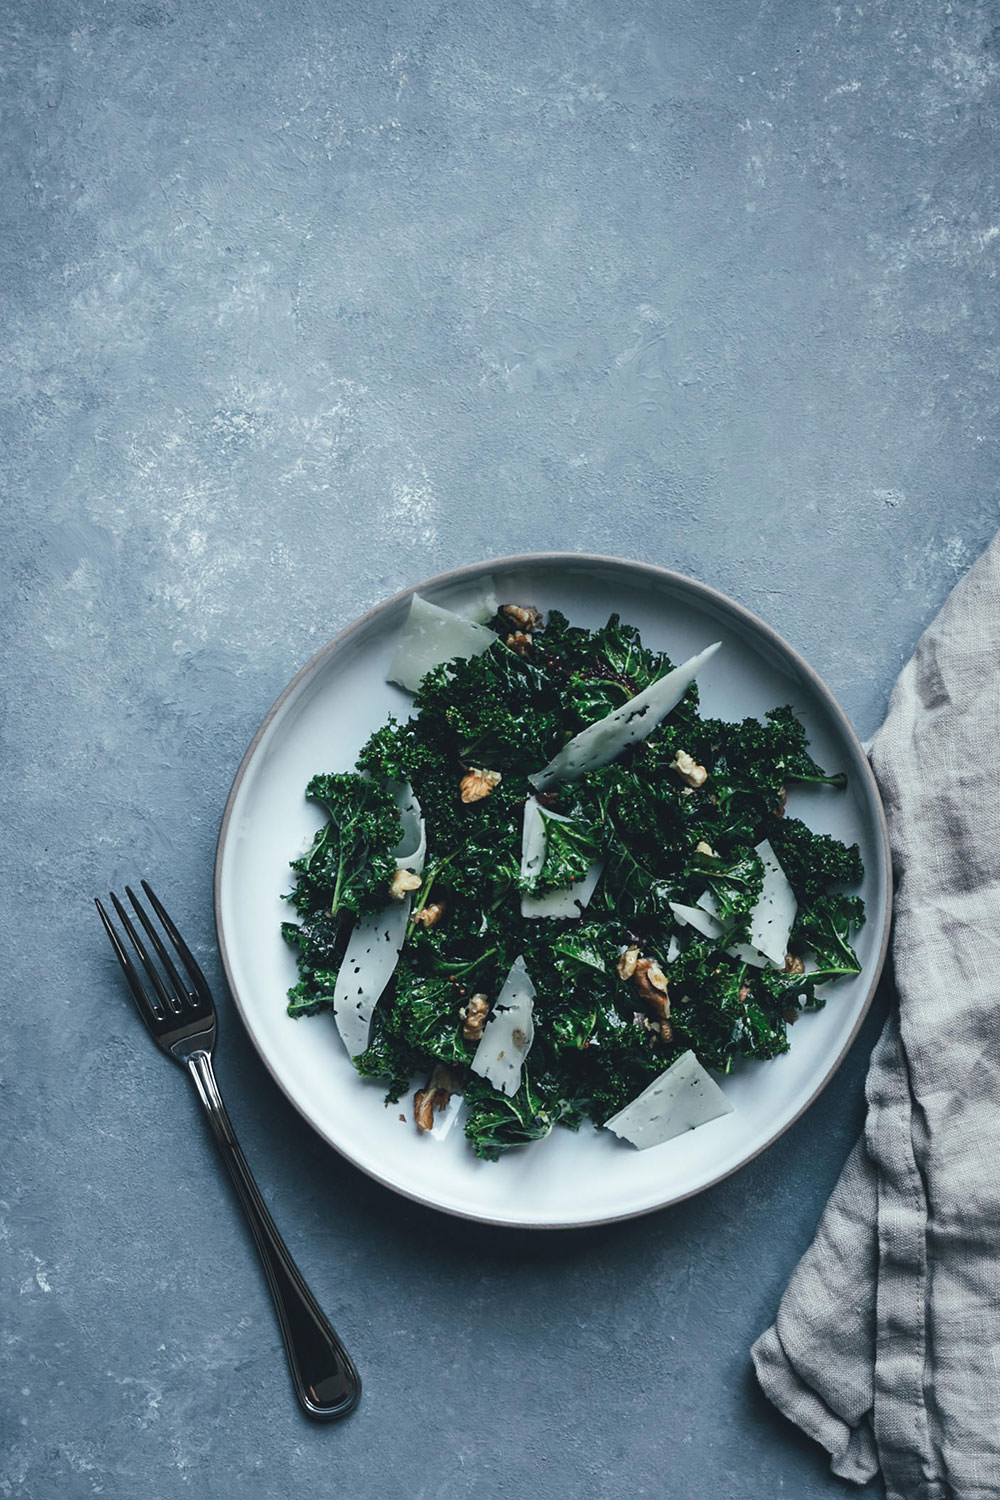 Rezept für knackigen Grünkohl-Salat mit Feigen-Dressing, Manchego und Walnüssen | moeyskitchen.com #grünkohl #kale #salat #wintergemüse #kohl #rezepte #foodblog #foodblogger